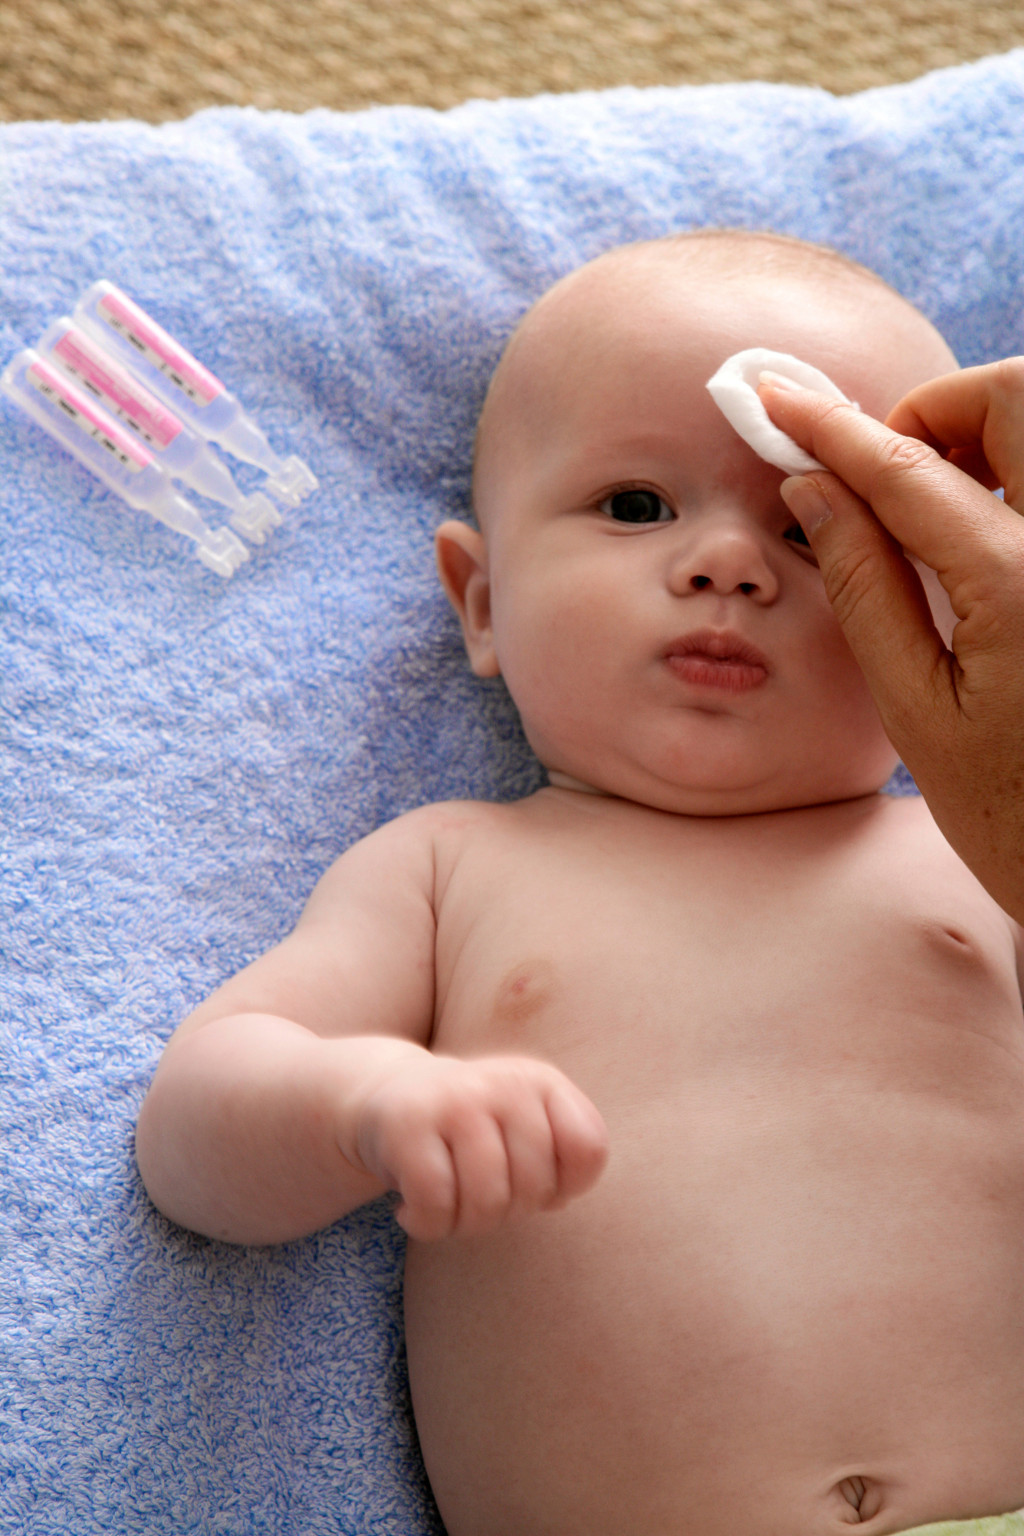 Comment bien laver le nez de bébé ?